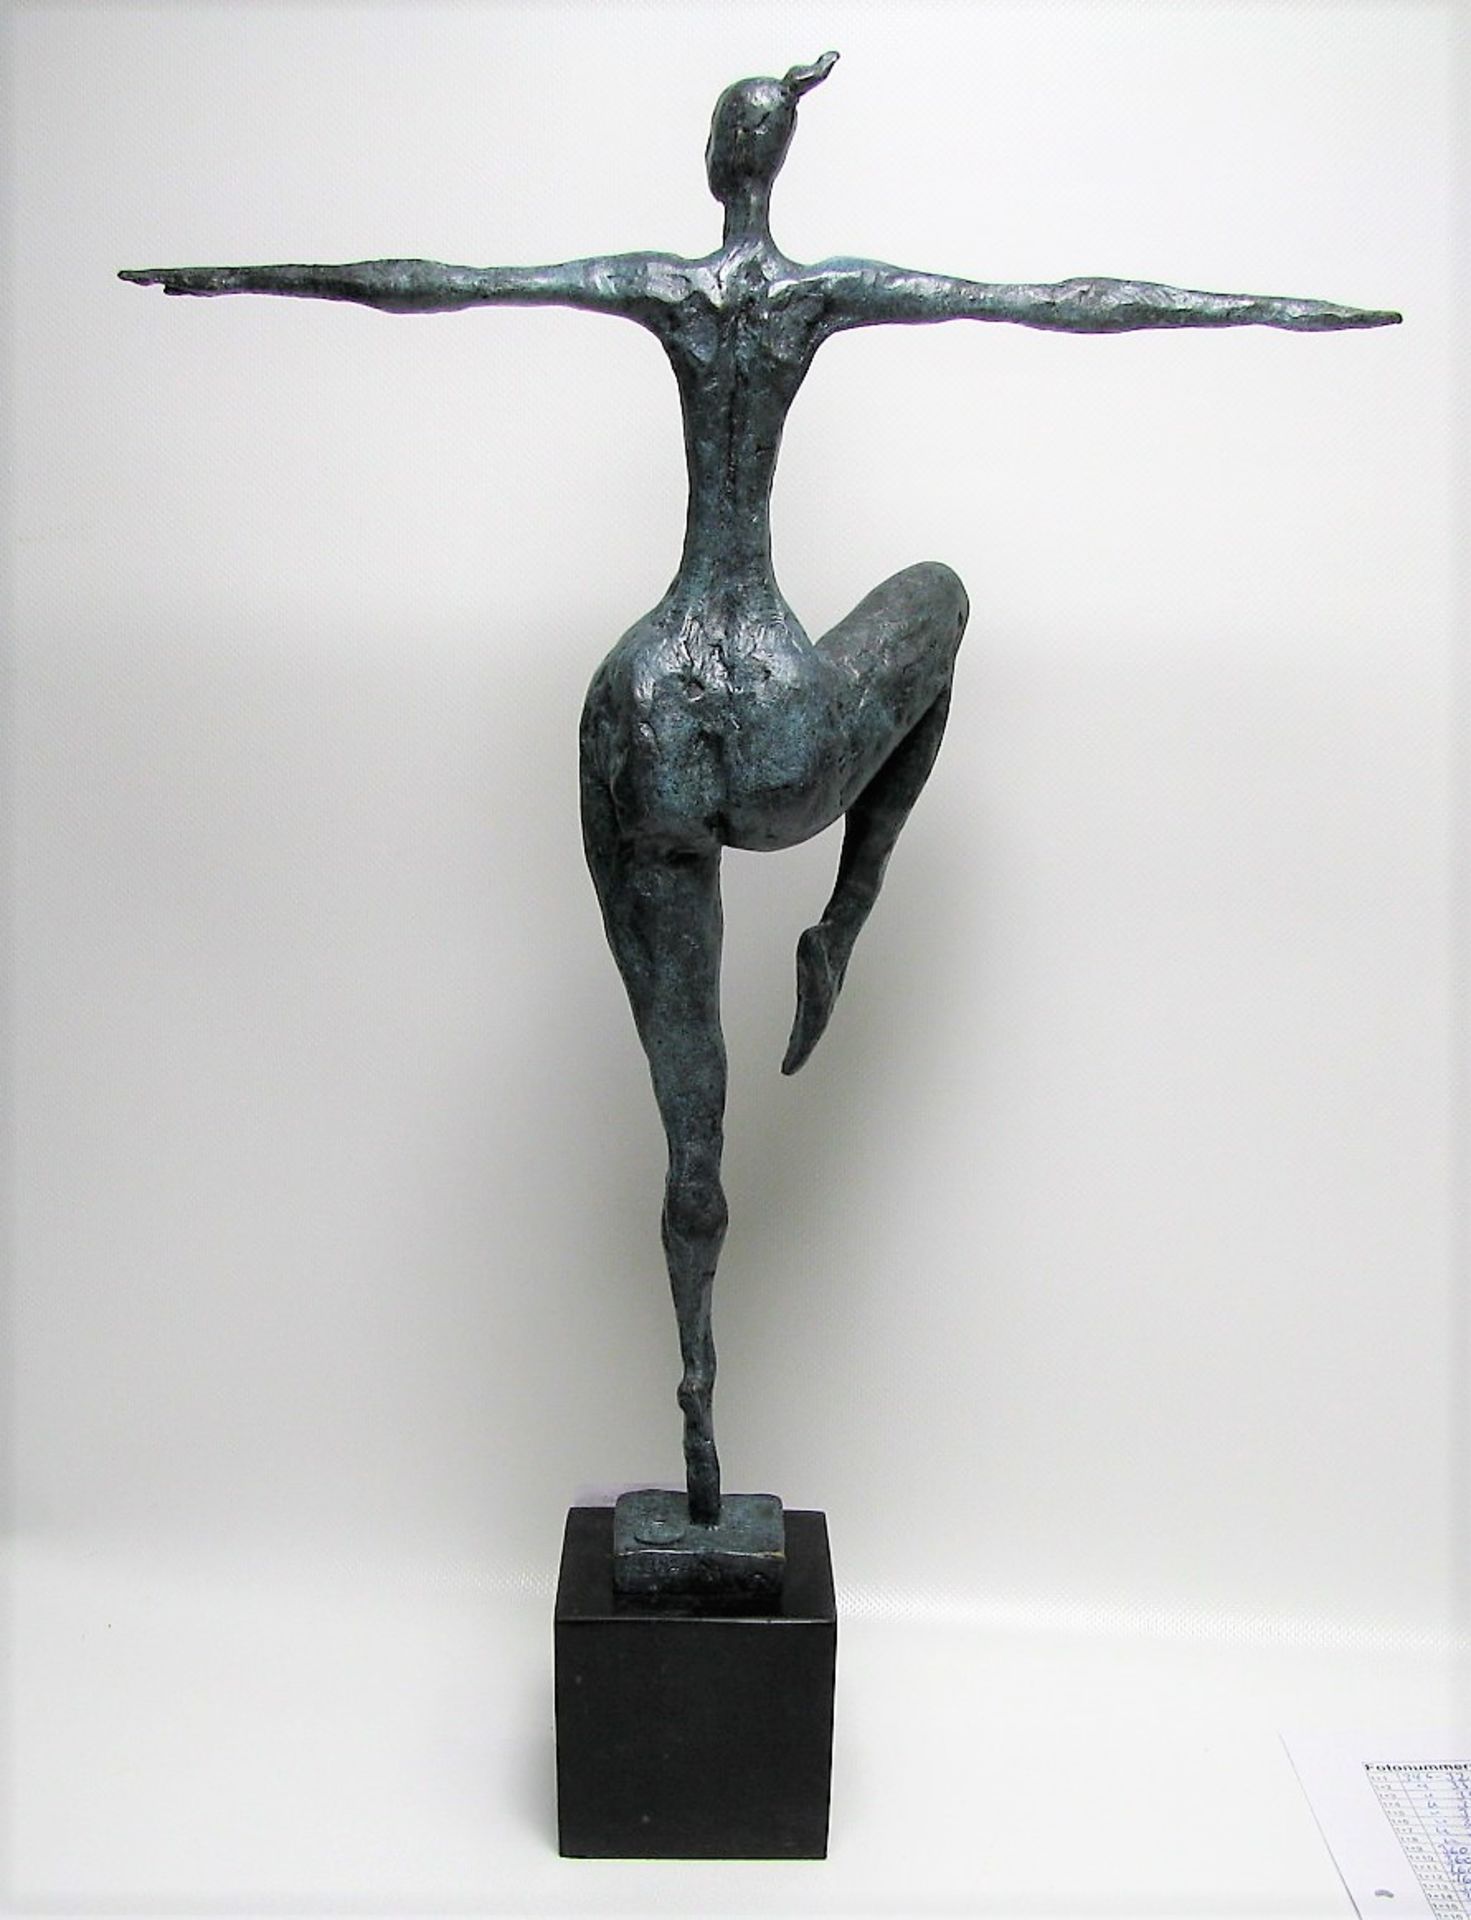 Tänzerin, Bronze grün-bläulich patiniert, nach Milo, Nr. A3028, Gießerstempel "JB Deposée Paris", - Bild 2 aus 2